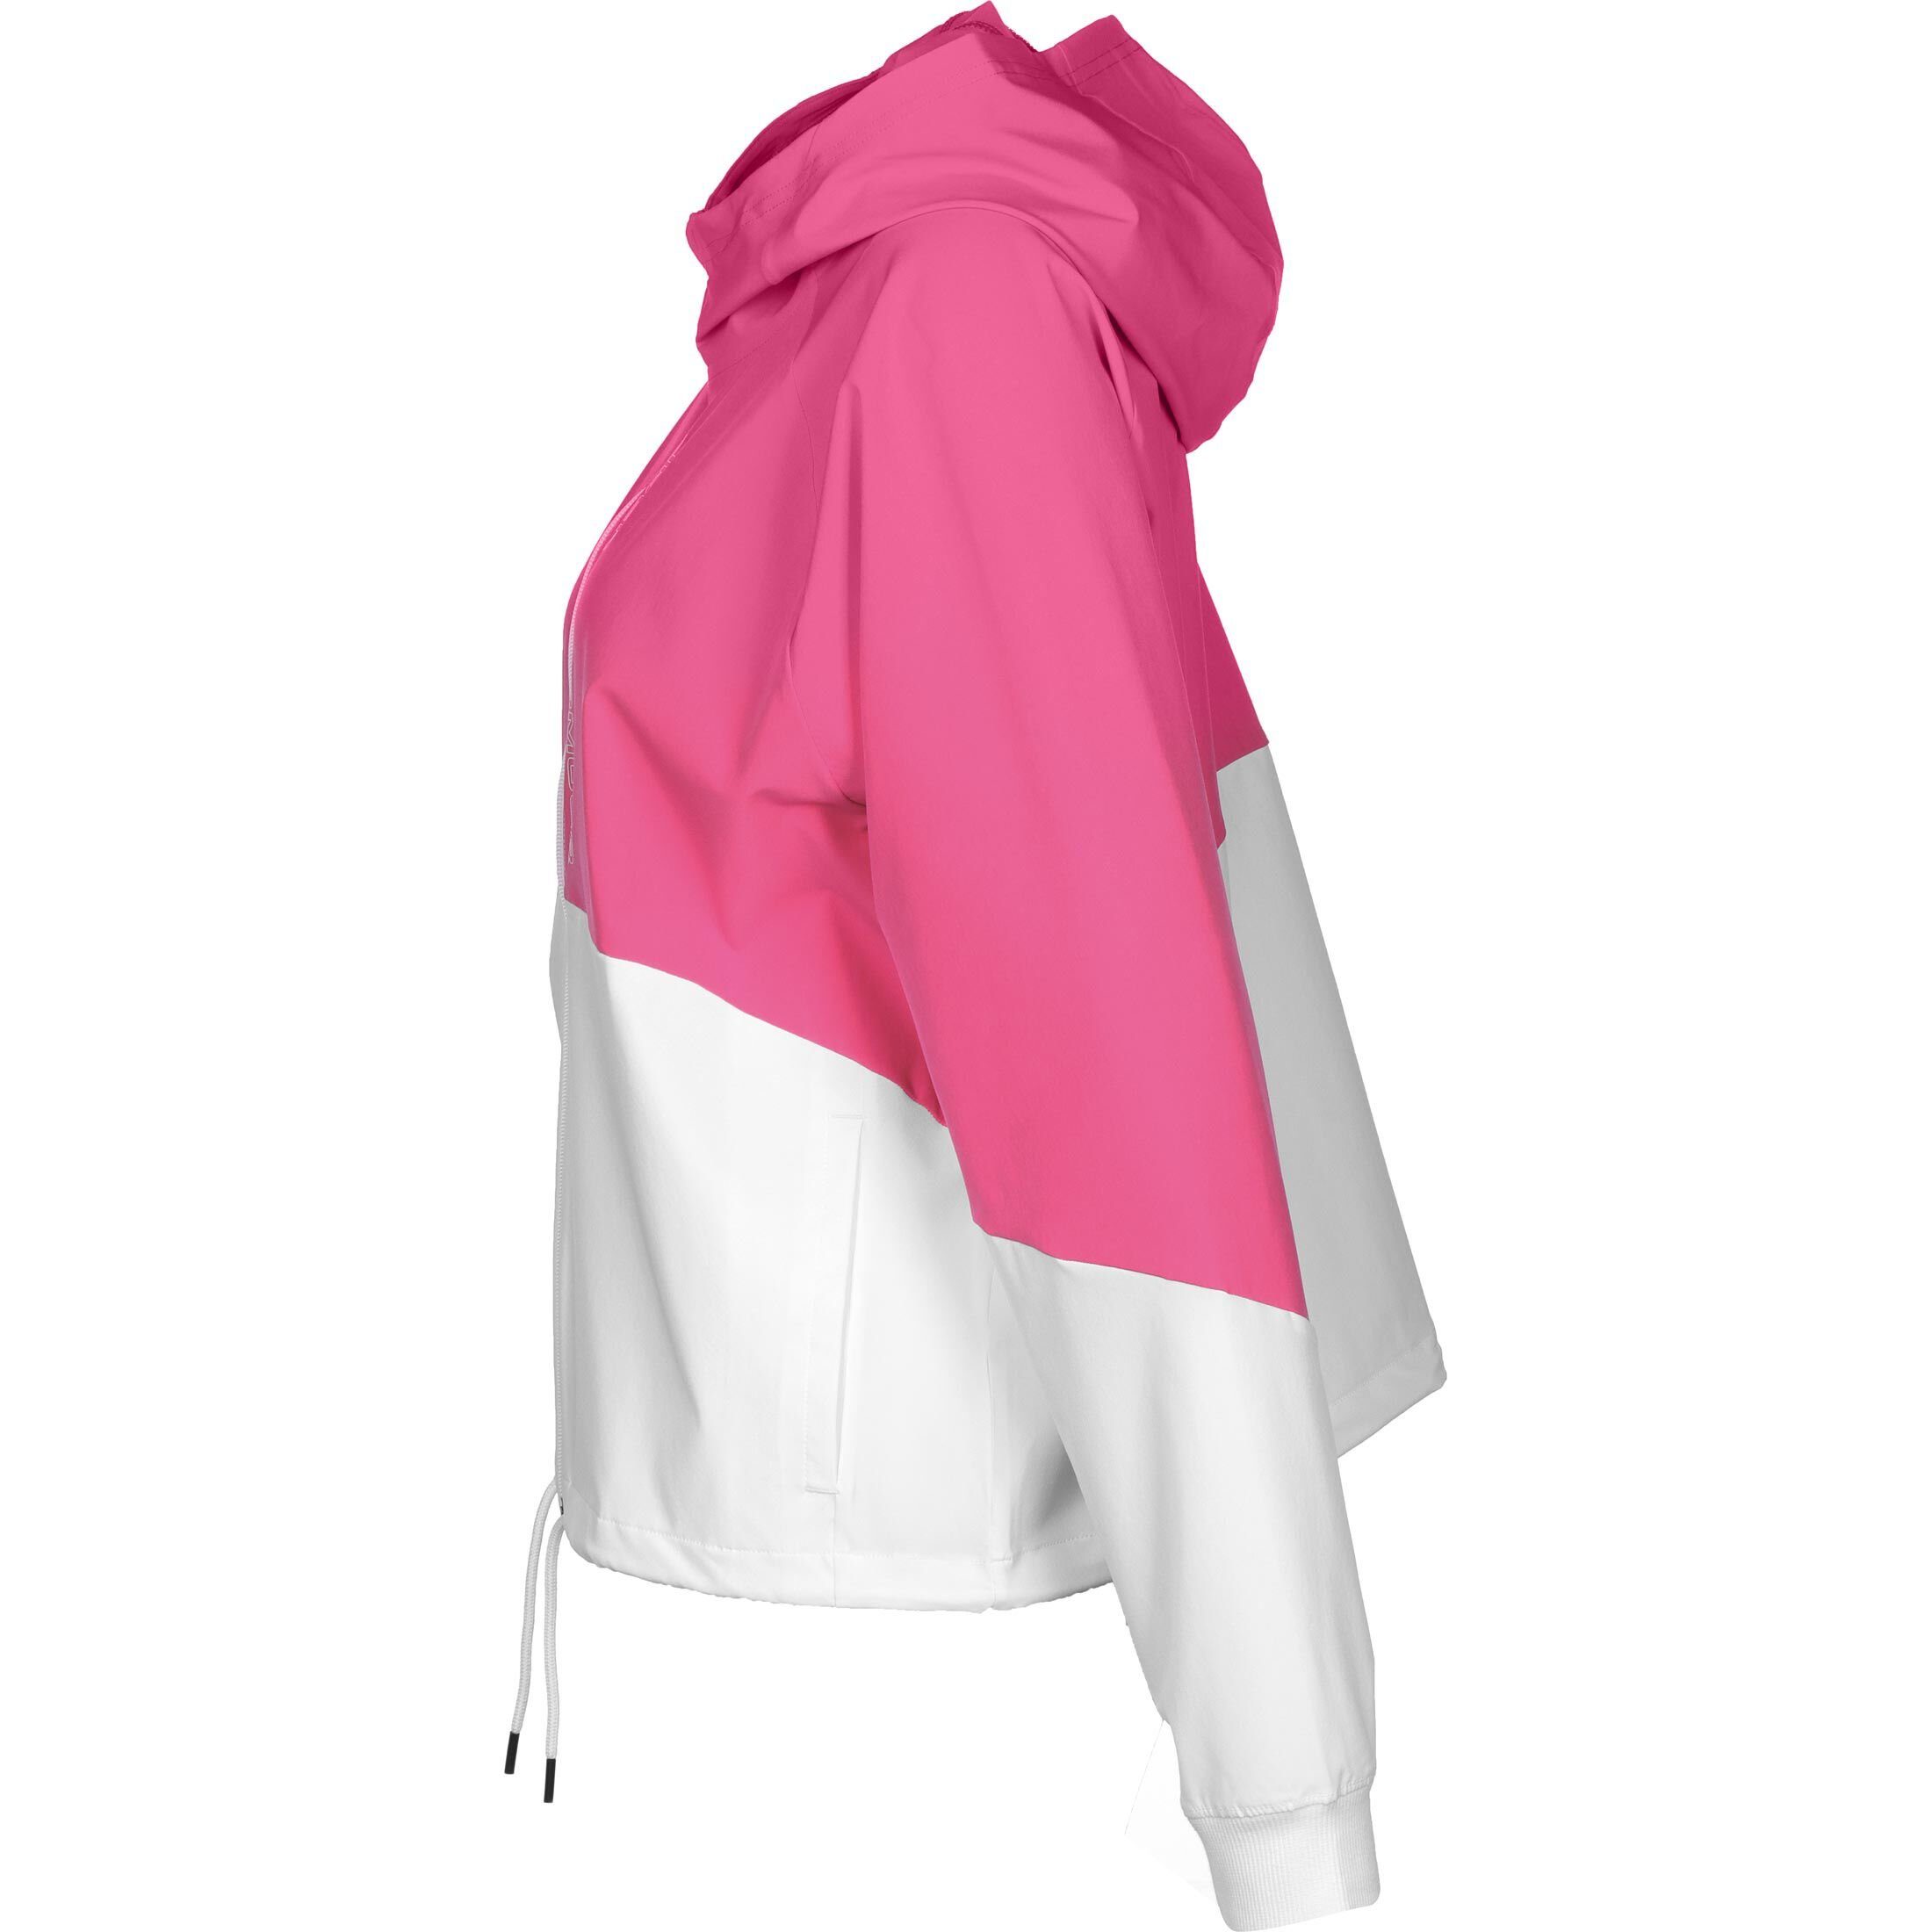 Jacke Trainingsjacke Damen pink / Woven Under Armour® weiß